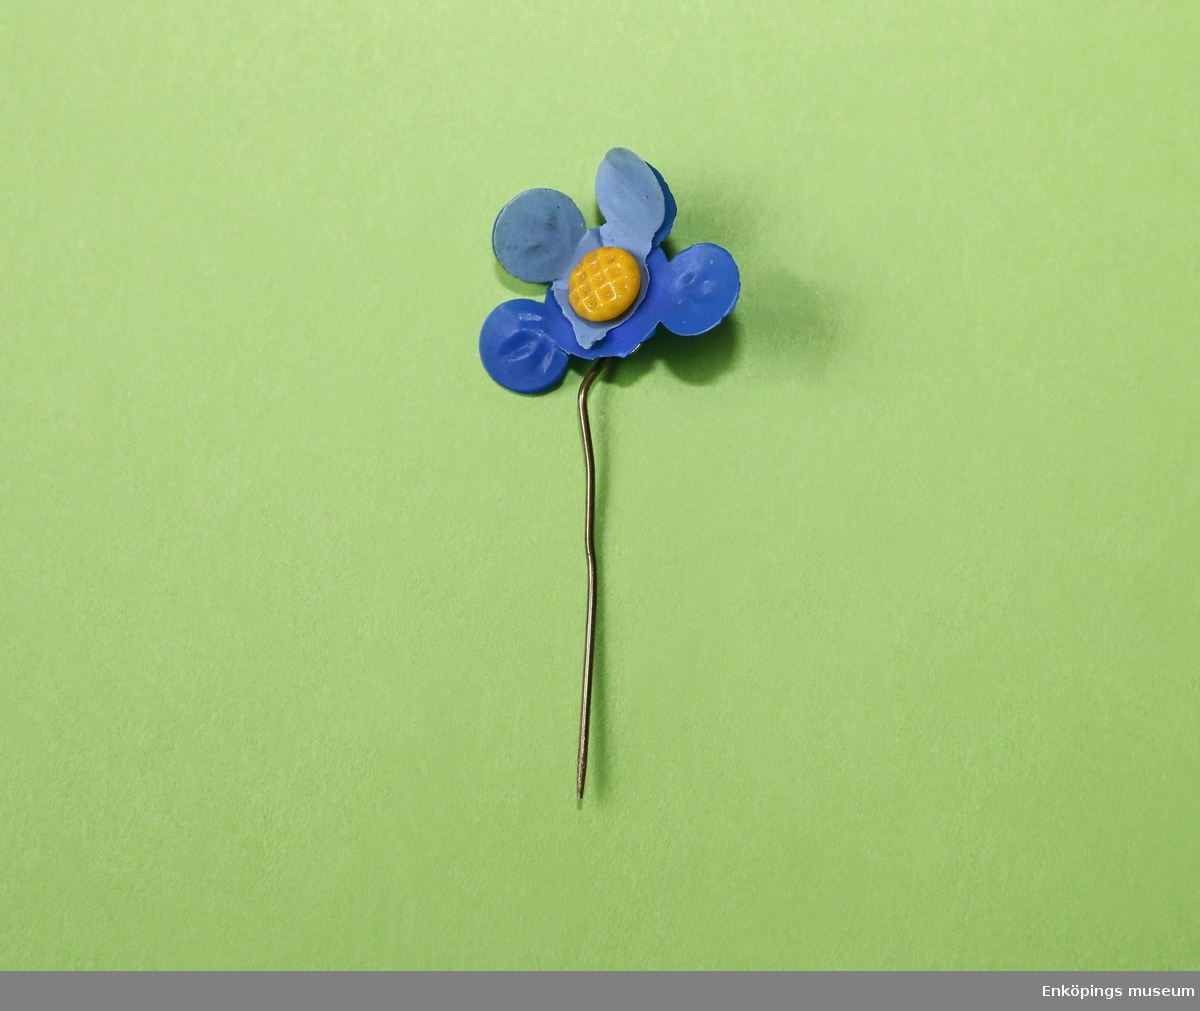 Majblomma från 1937.
Blomman är gjord av ljusblå och mörkblå celluloid. Blomman har två övre blad i ljusblått (tre saknas) och fyra undre blad i mörkblått (en saknas) samt en gul mittknapp, även denna gjord av celluloid. 
Det som håller blomman samman är en nål av mässing.